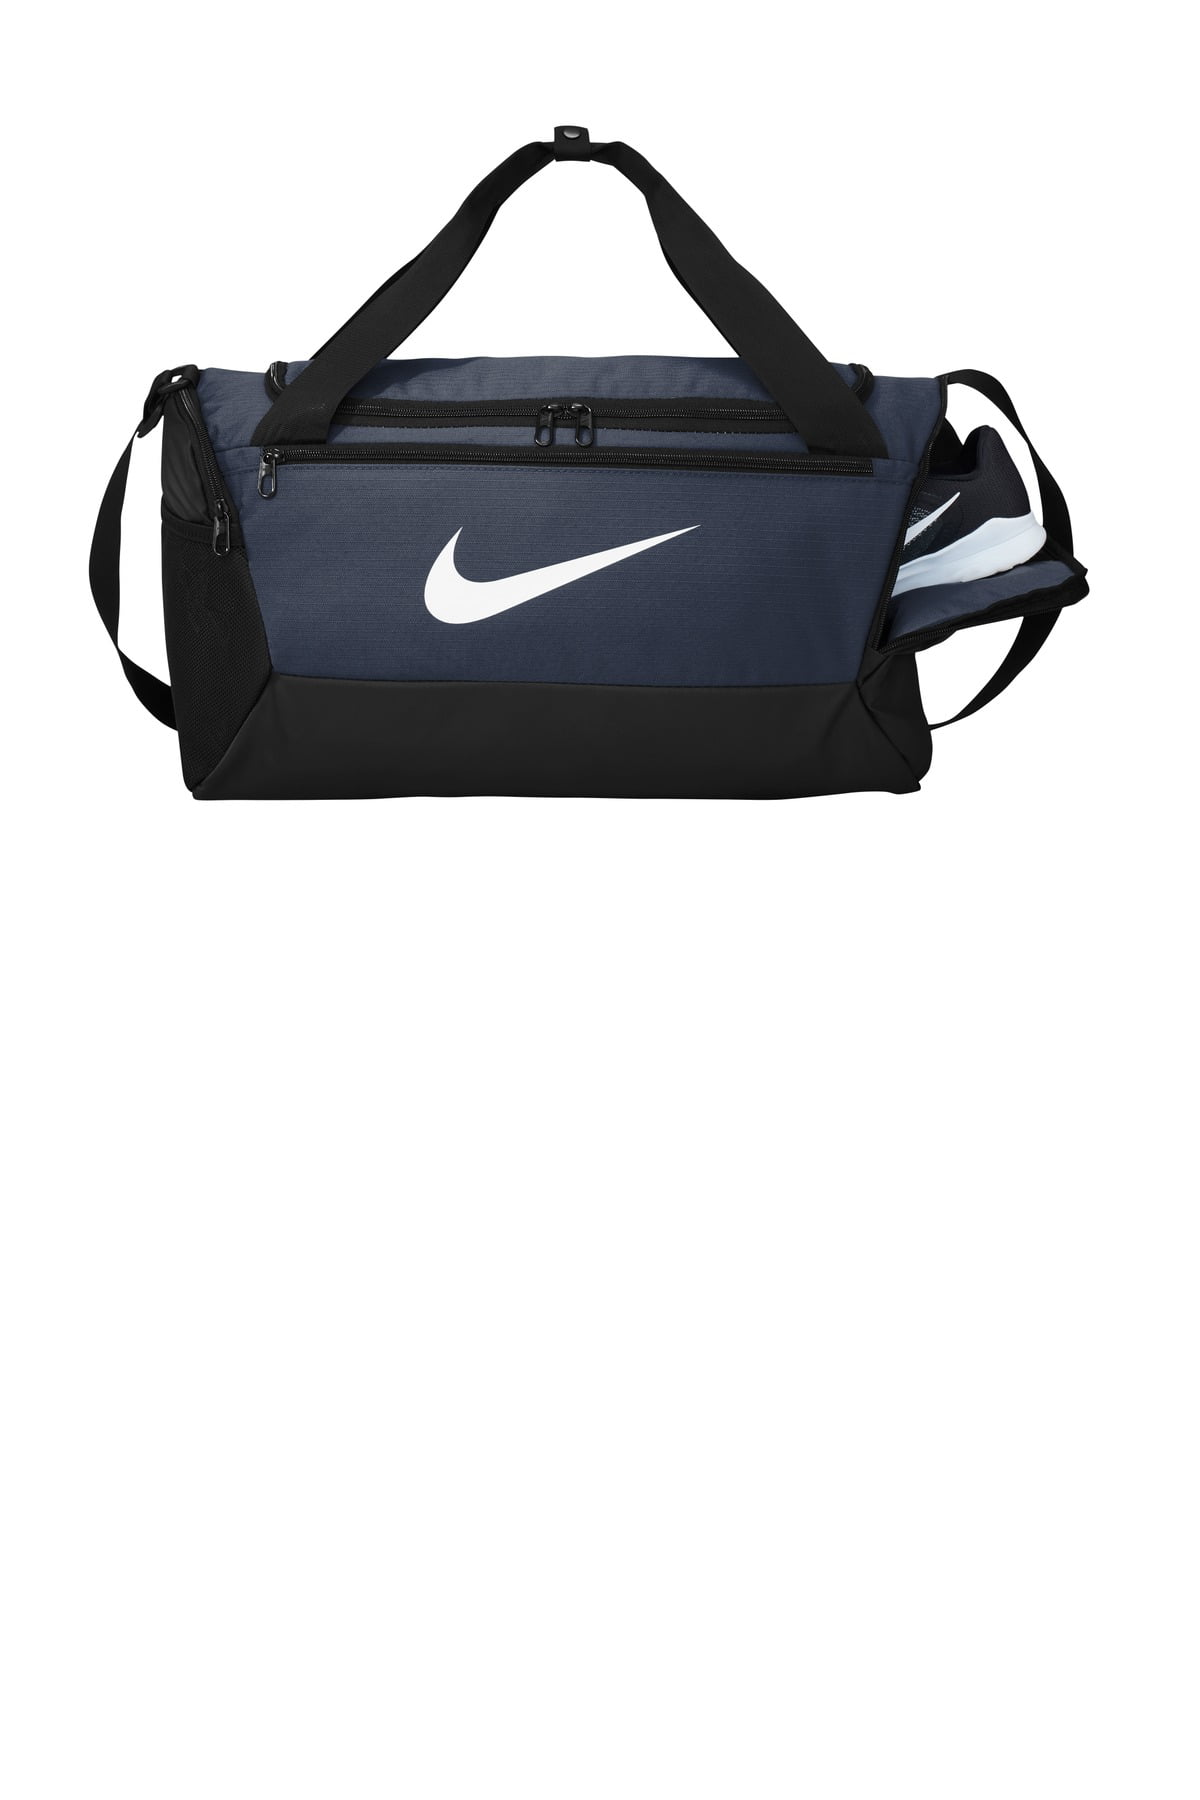 Nike Heritage Duffel Bag Logo Unisex Gym Training Travel Black New  100%AUTHENTIC